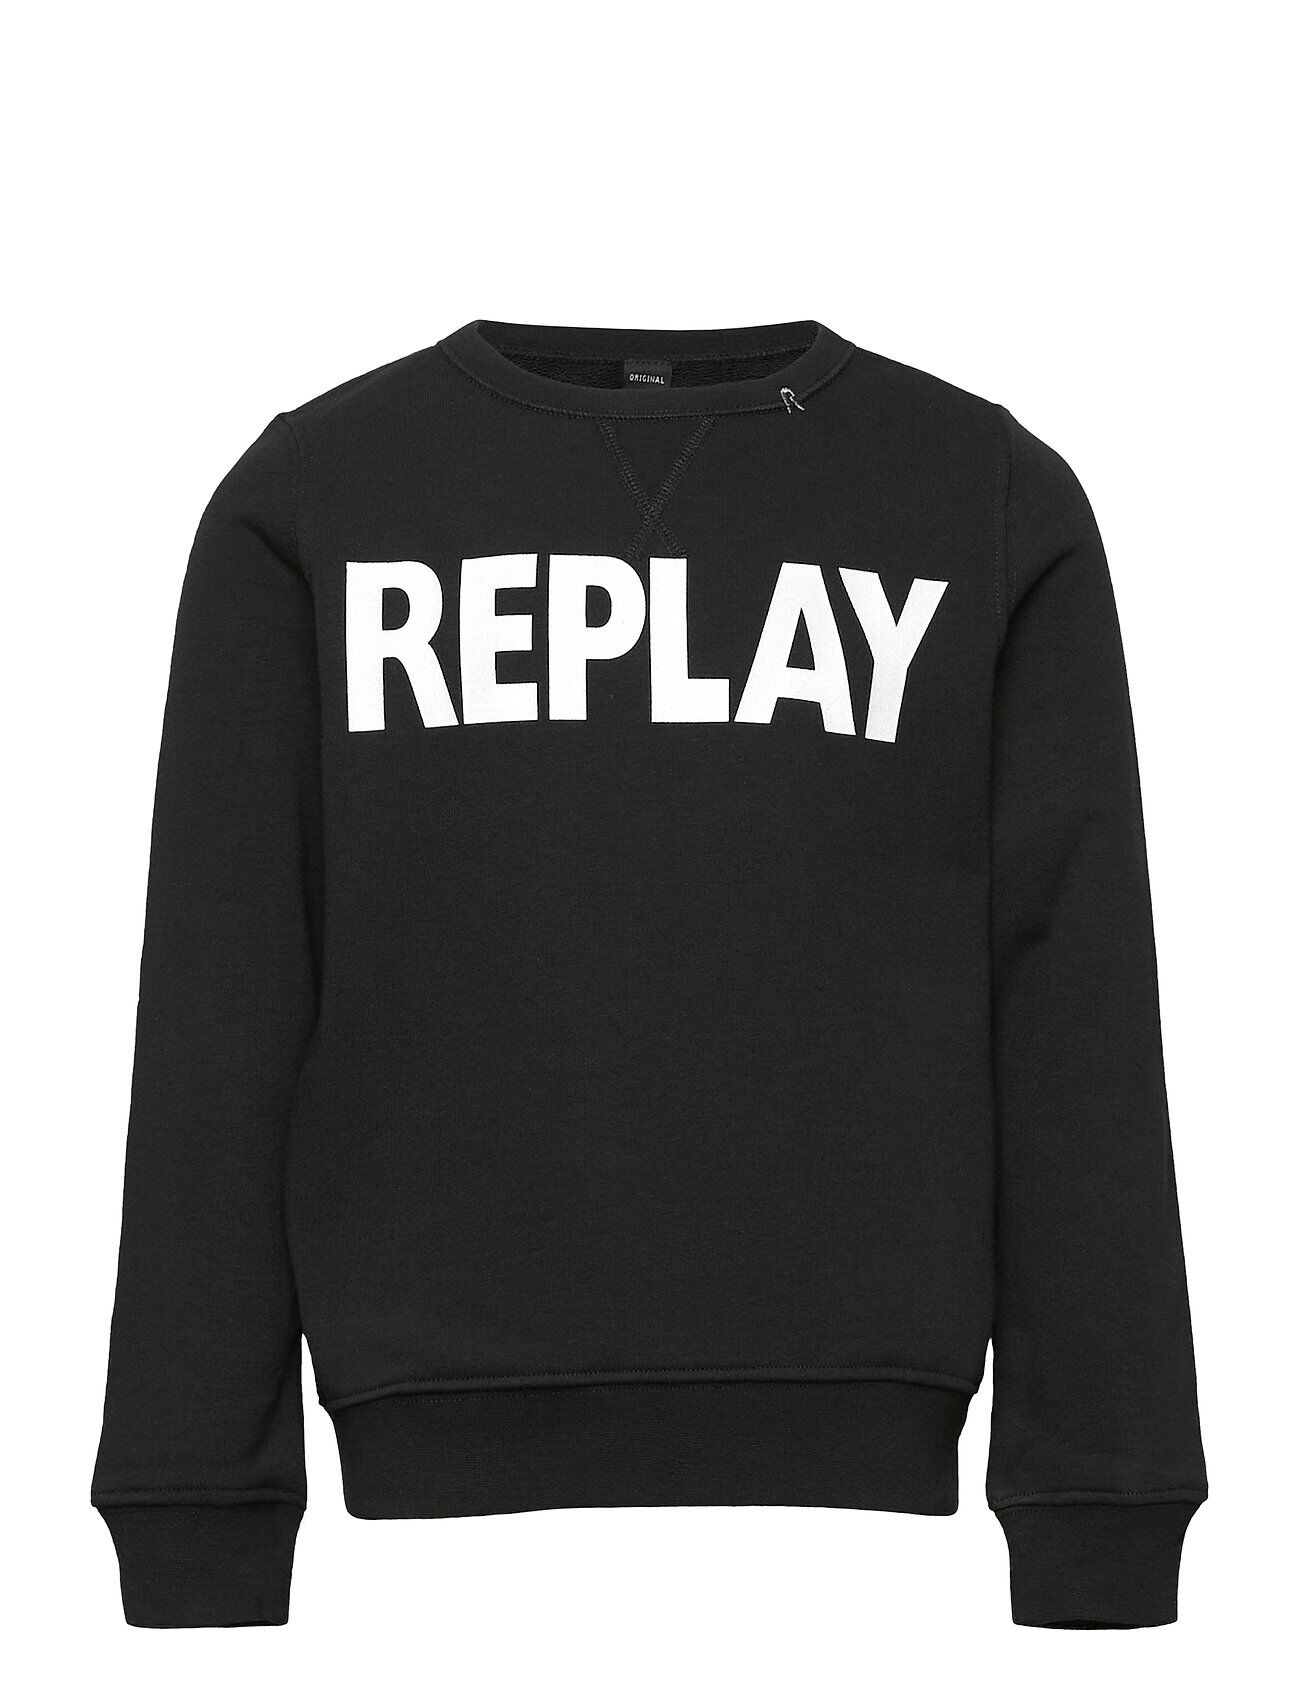 Replay Sweater Sweat-shirt Genser Svart Replay